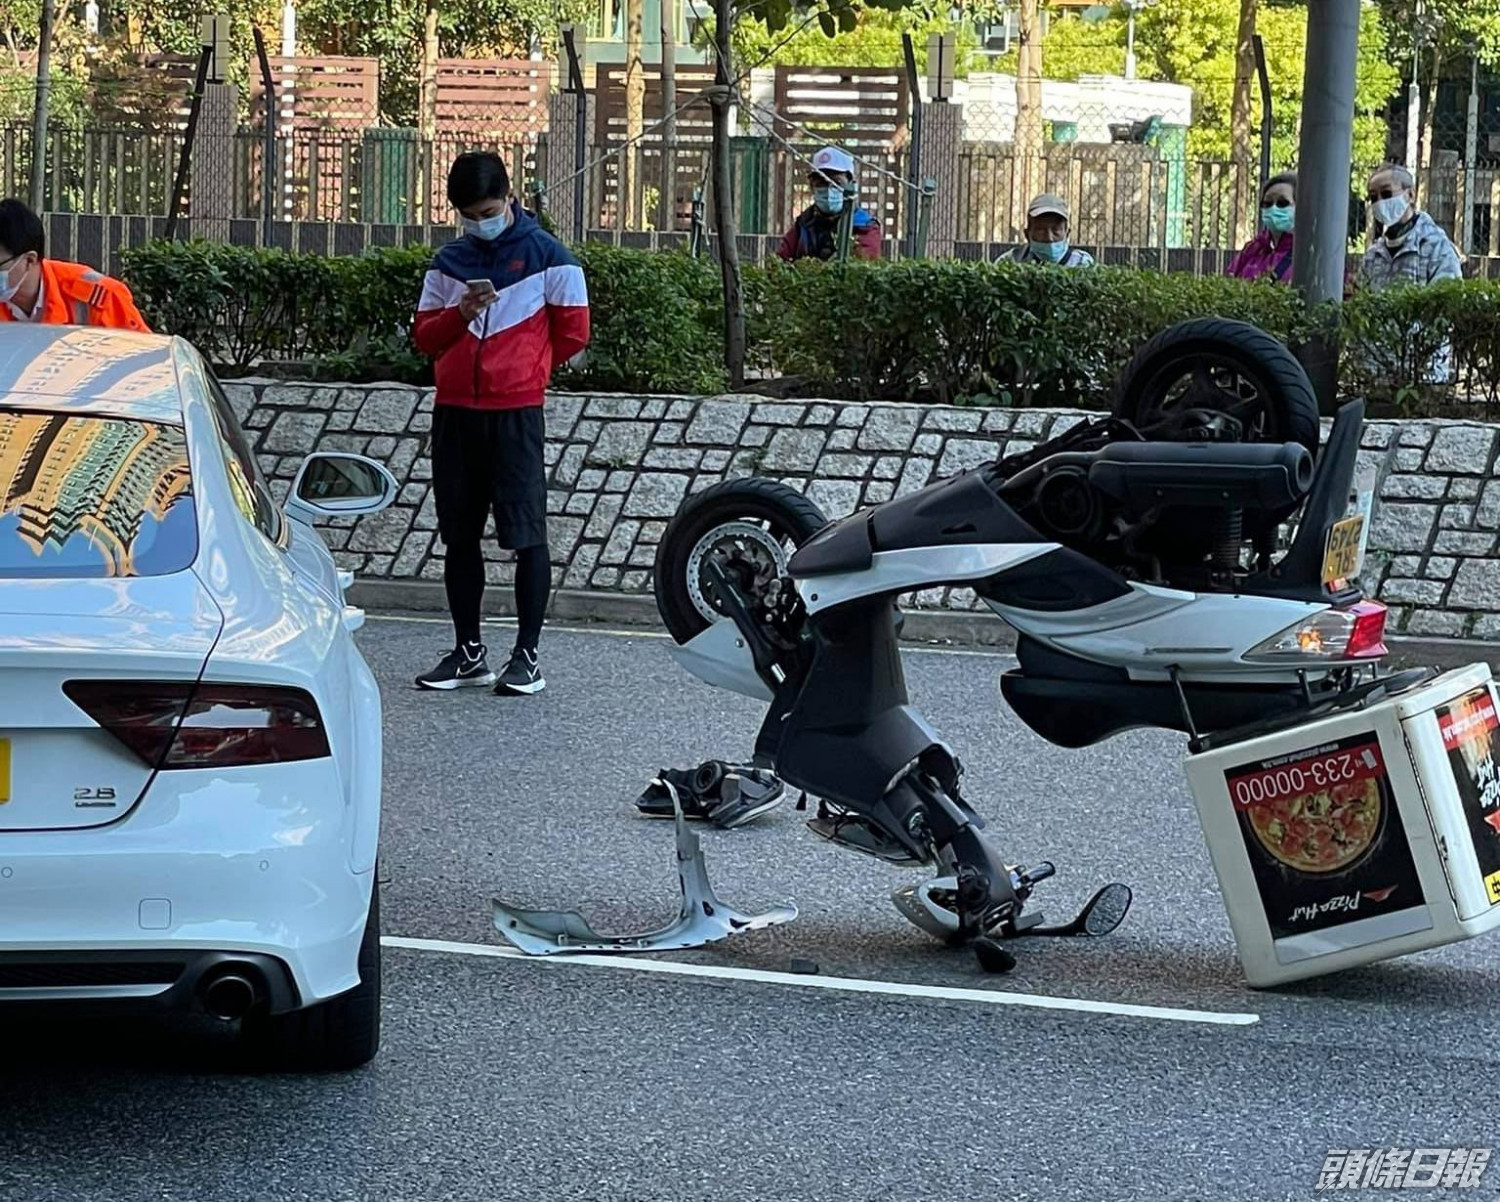 紅磡pizza Hut外賣員捱車撞受傷電單車被撞致兩輪朝天 頭條日報